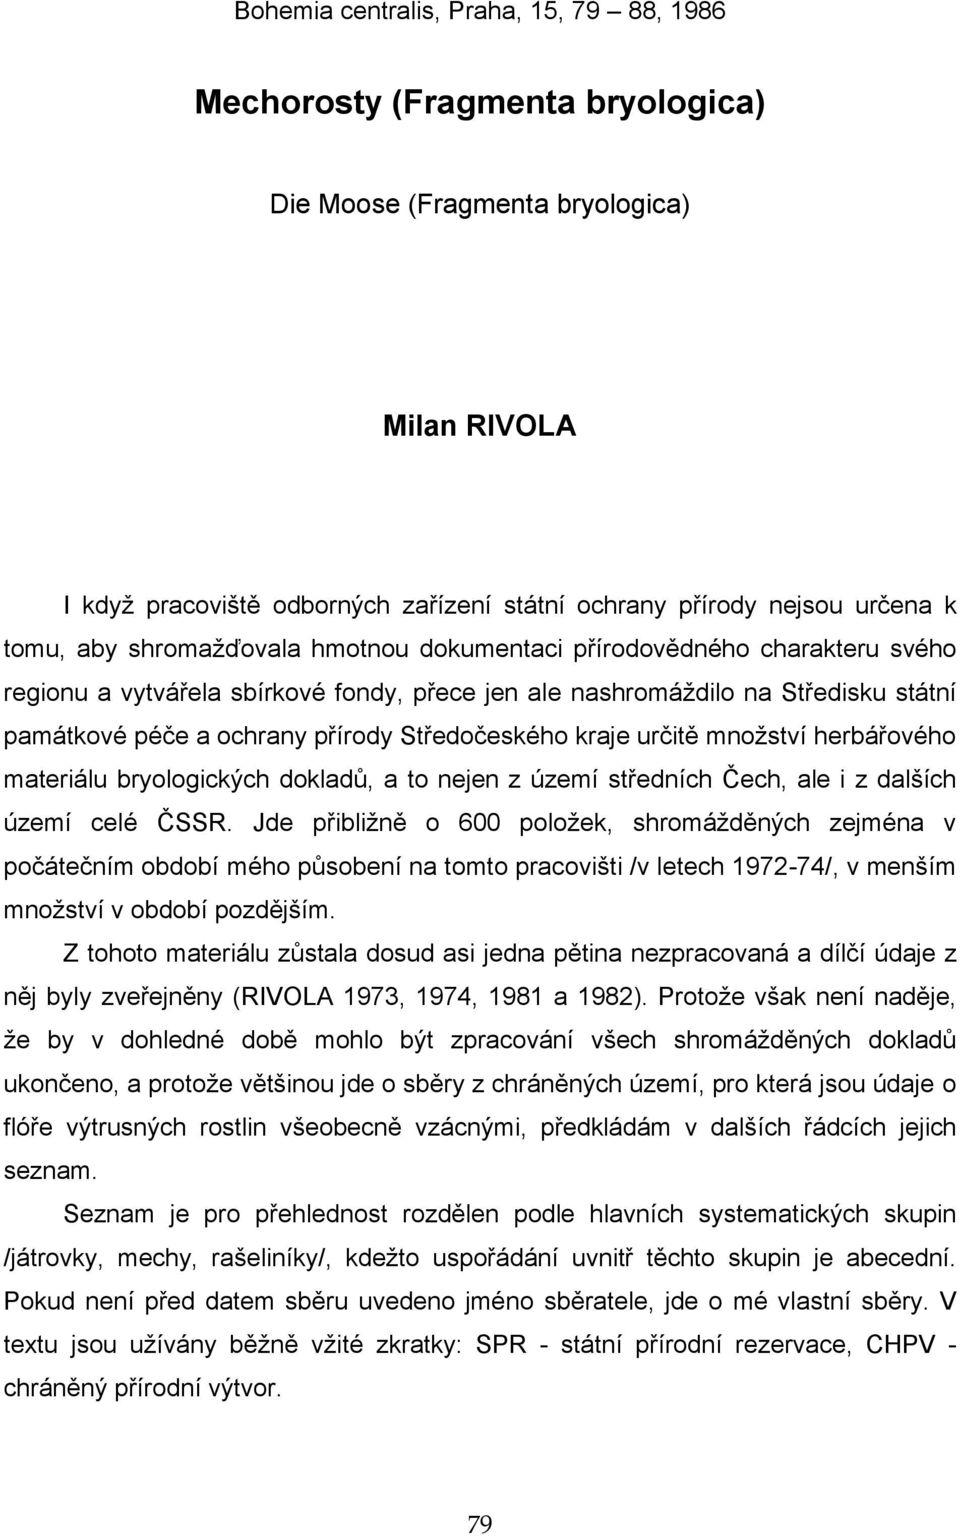 Středočeského kraje určitě množství herbářového materiálu bryologických dokladů, a to nejen z území středních Čech, ale i z dalších území celé ČSSR.